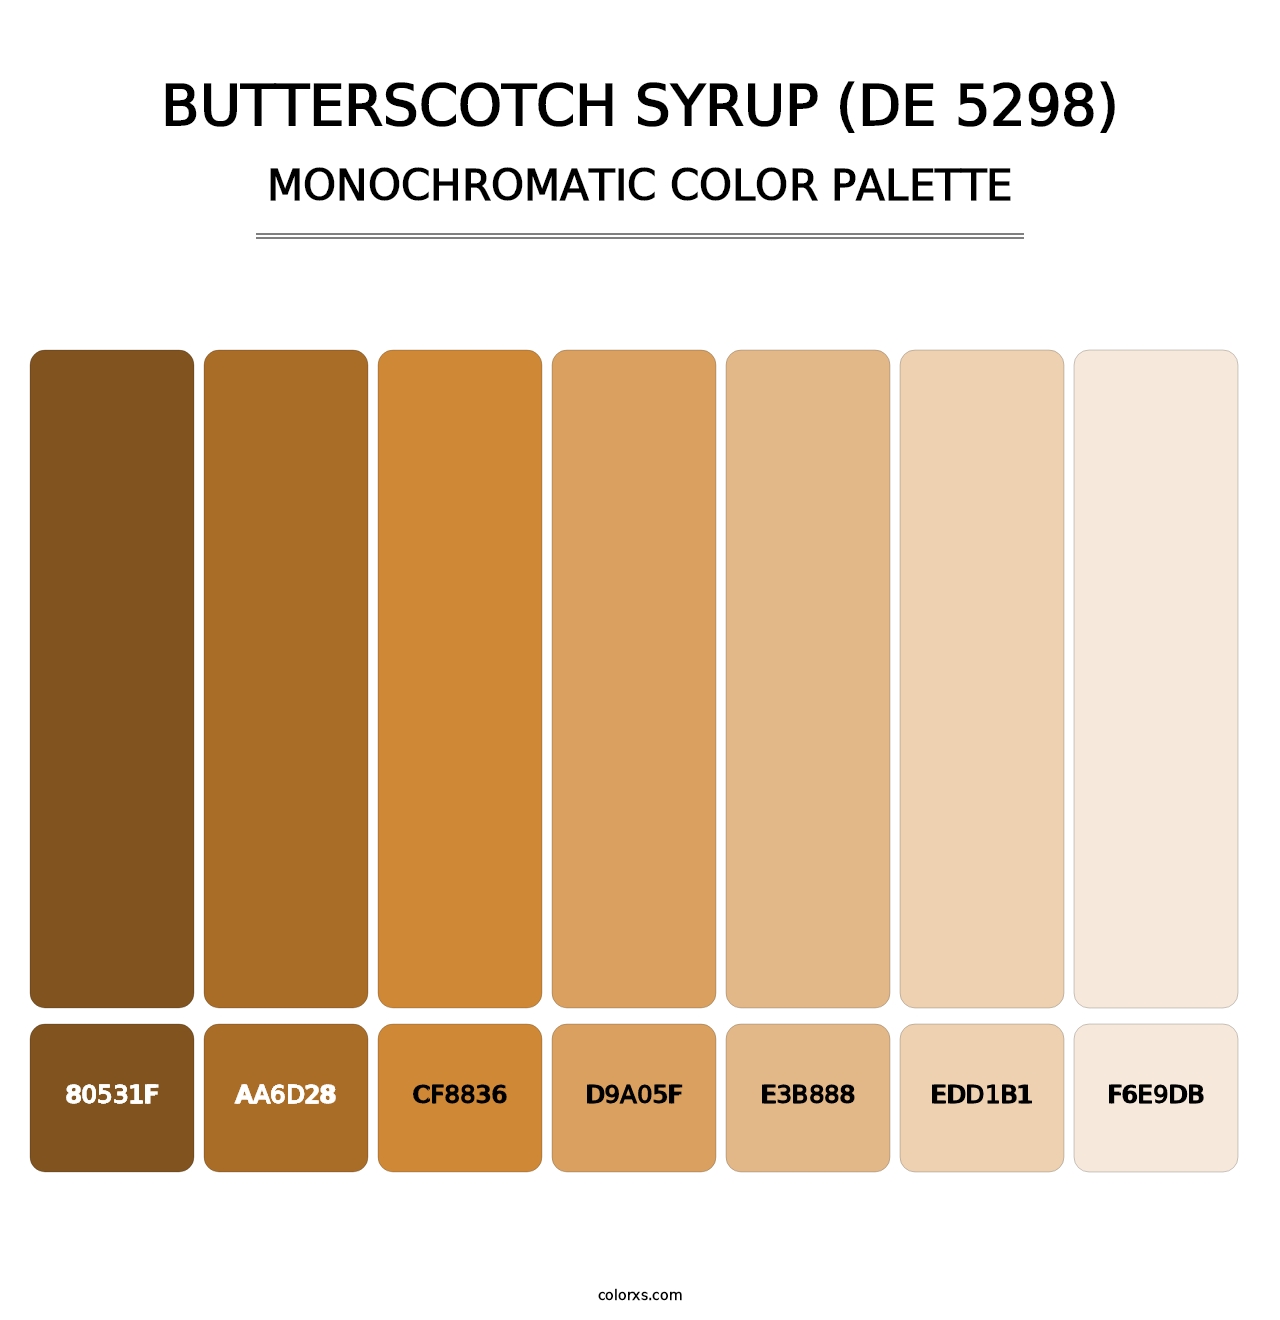 Butterscotch Syrup (DE 5298) - Monochromatic Color Palette